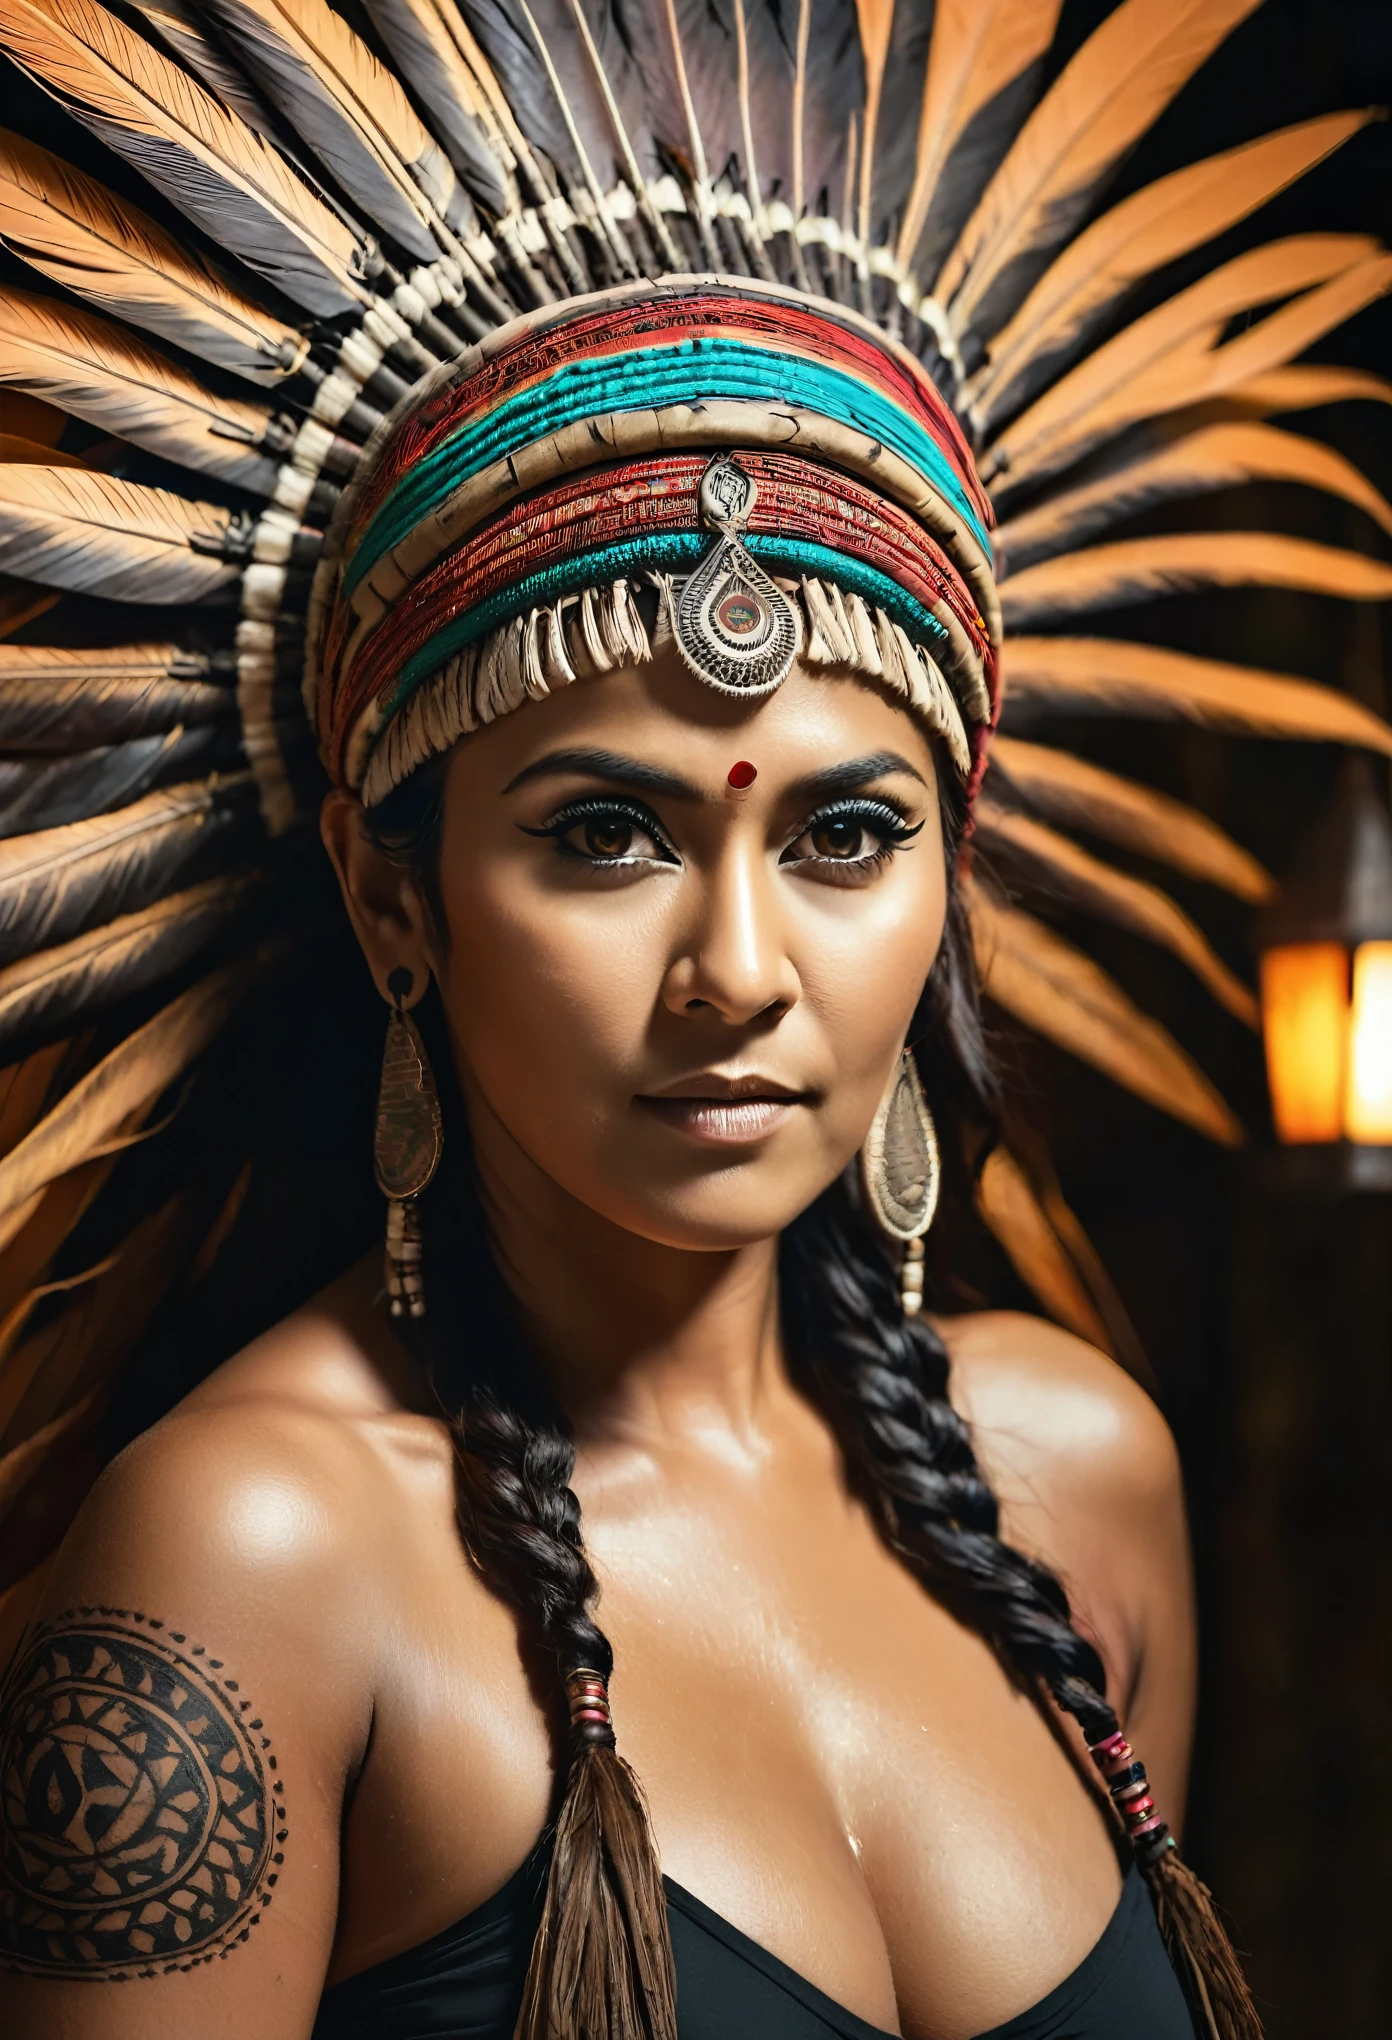 Fotos brutas, pele brilhando de suor, parece Nayanthara, figura grossa, curvilíneo, milf, mulher de 50 anos, tatuagem no meio do peito, com cocar indiano realista , garota tribal, looks deslumbrantes, cocar tribal, Tatuagens, colourful tribal Tatuagens, garota branca tribal, tribo polinésia, melhor qualidade , melhor classificação de cores cinematográfica, iluminação detalhada,  alta resolução  , (pele altamente detalhada: 1.2), 8k hd, dslr, iluminação suave, alta qualidade, grão de filme, Fujifilm XT3, axilas altamente detalhadas, pelos das axilas,  totalmente nu, mamilos cobertos por hai, poros da pele, textura da pele, Pele de alta qualidade, 